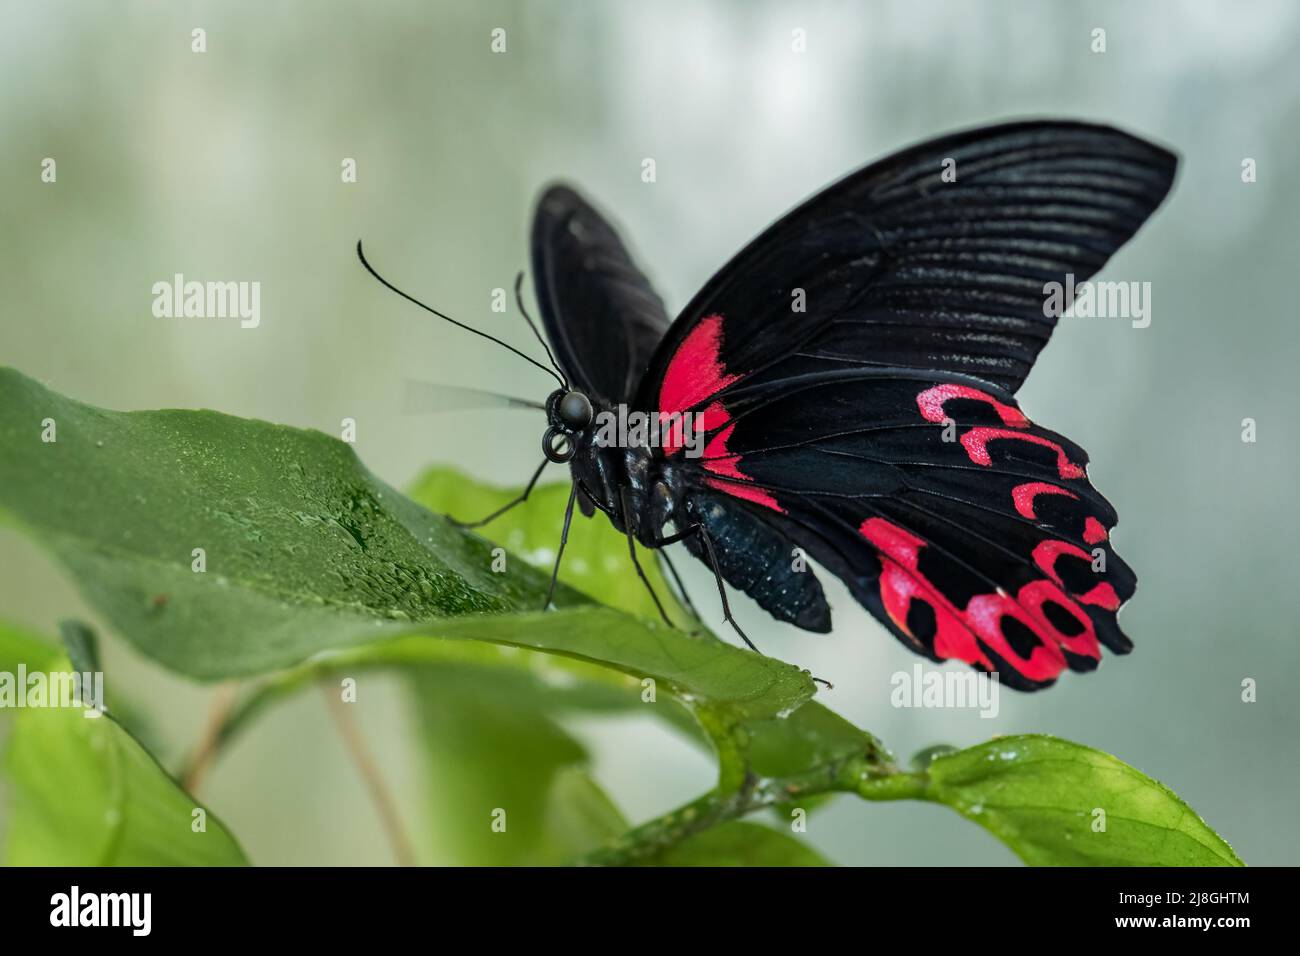 Scarlatto farfalla mormone - Papilio deifobus rumanzovia, bella grande farfalla colorata da foreste e giardini del sud-est asiatico, Sulawesi. Foto Stock